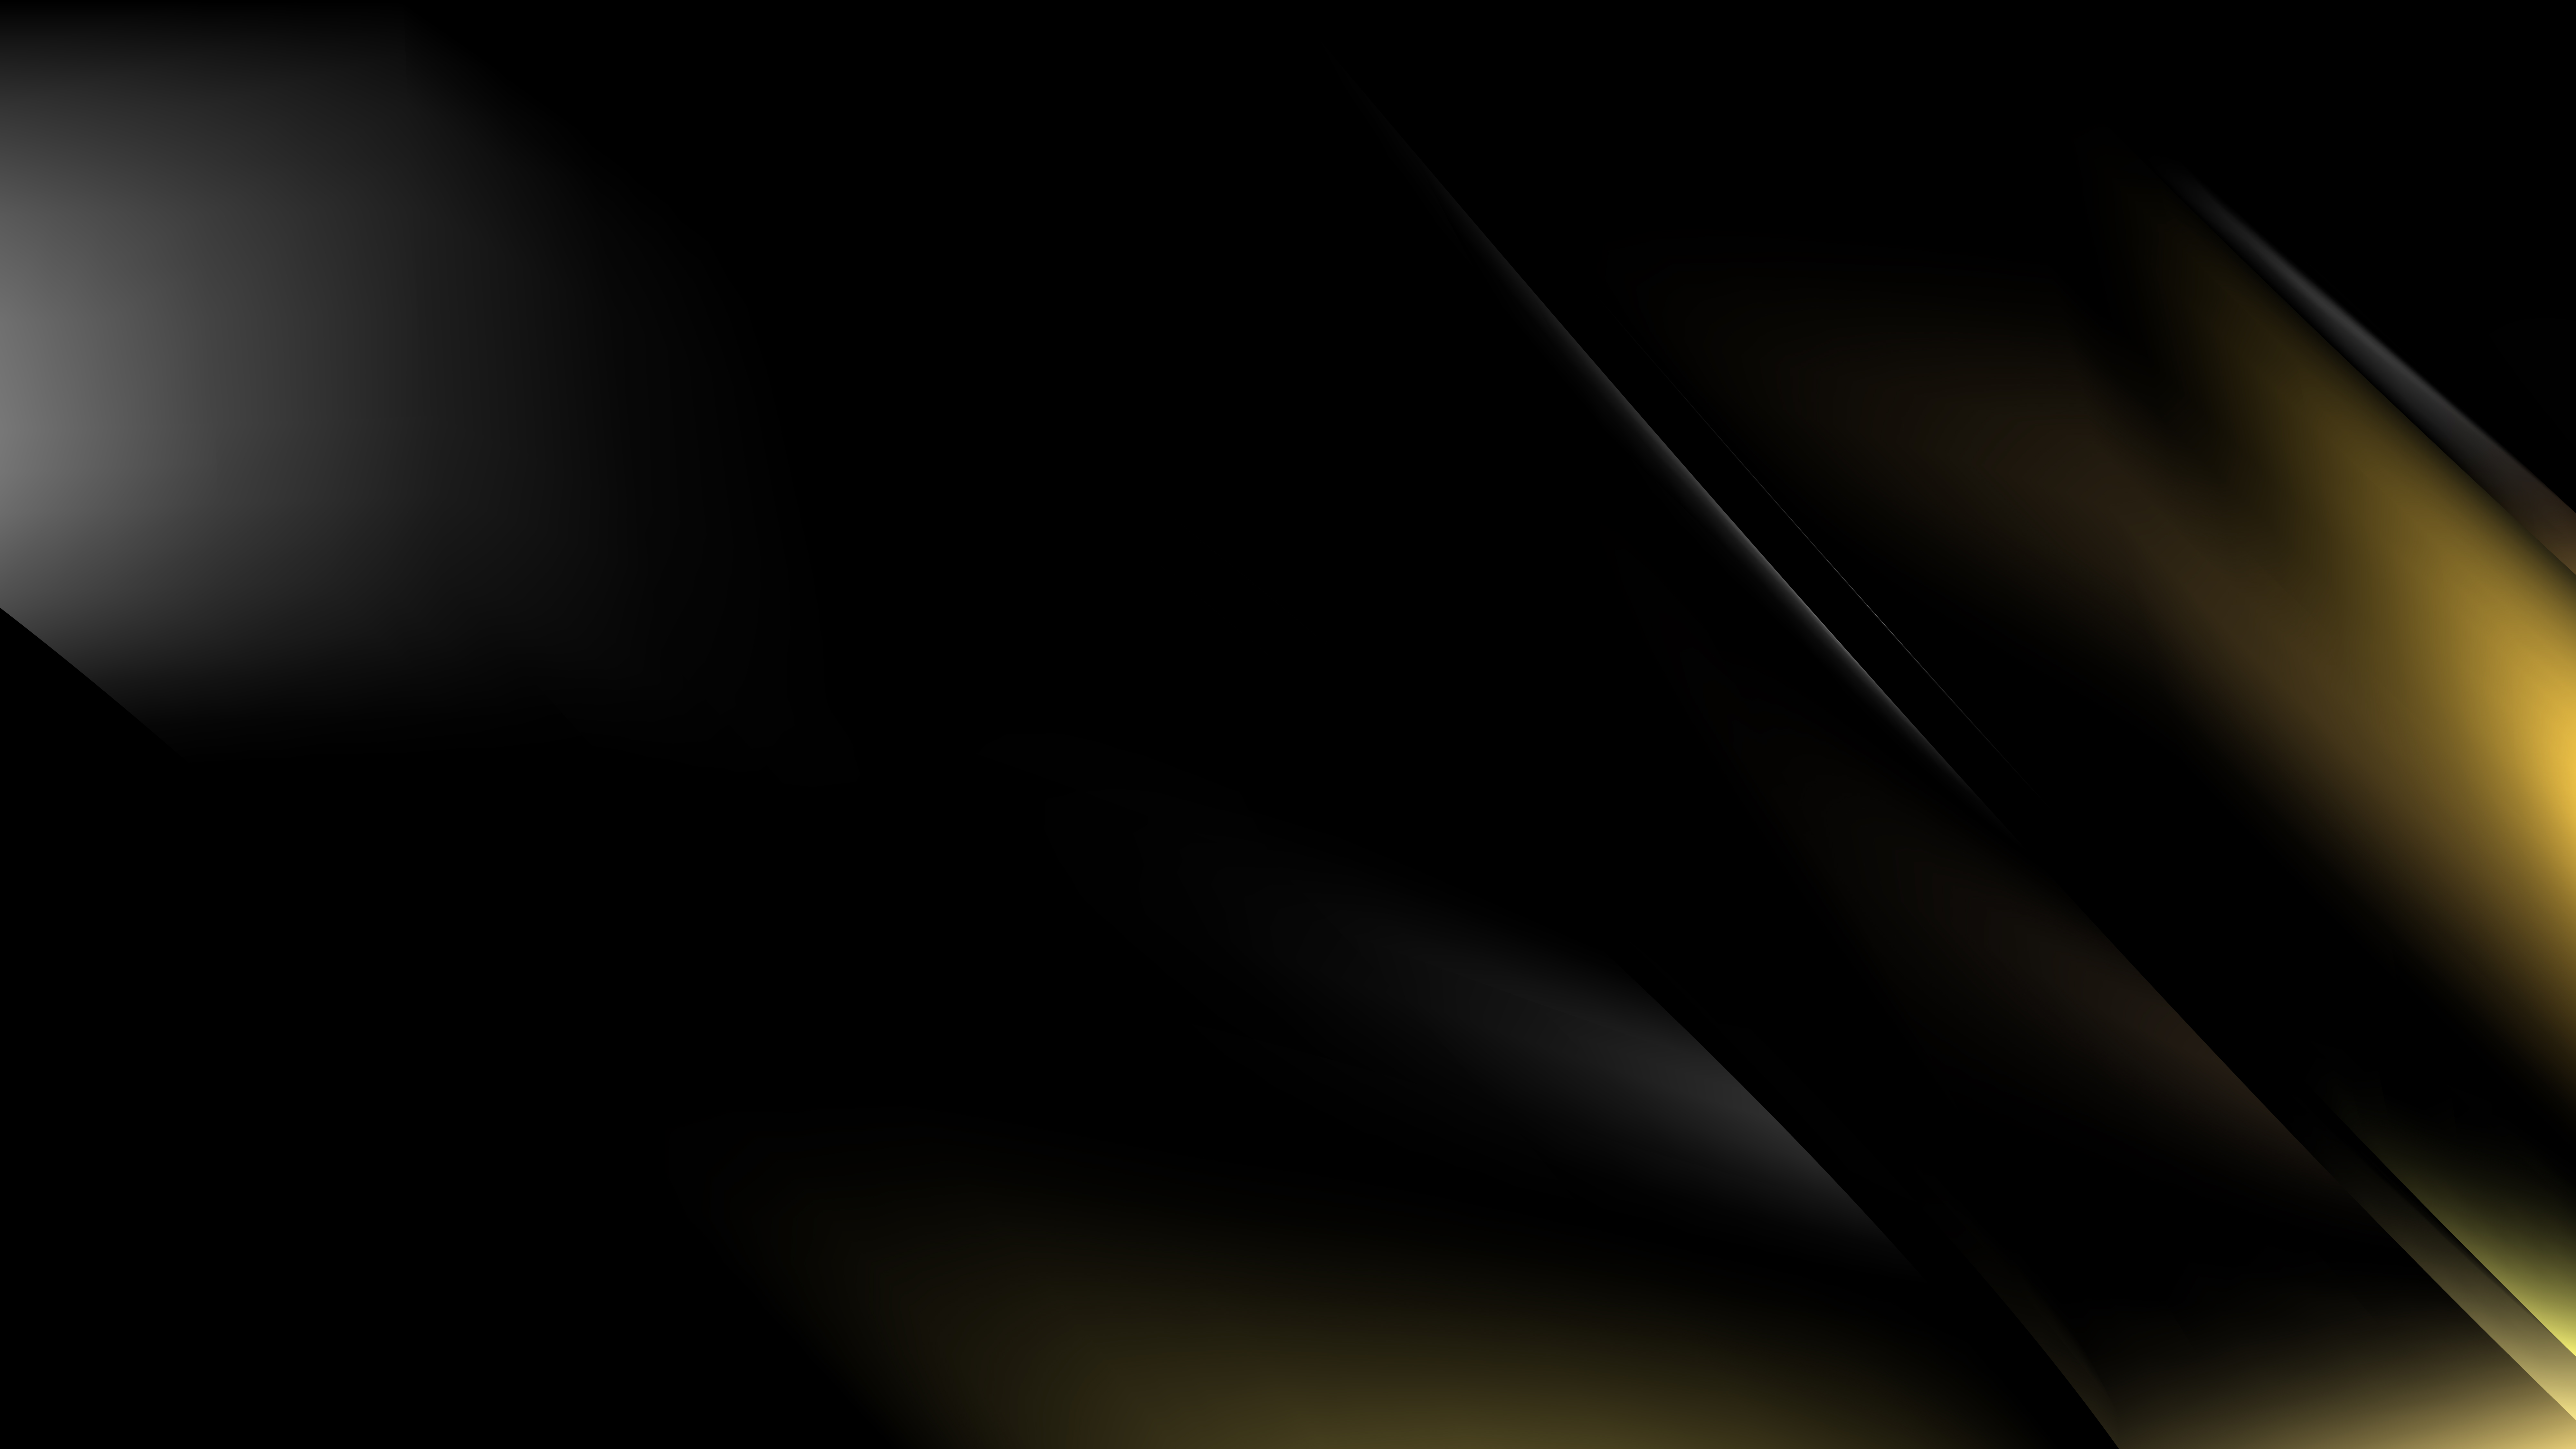 Пион Shining Black Gold / Glossy Black /сверкающее черное золото. Картинка полоска наискосок золото черная матовая из трансформеров.